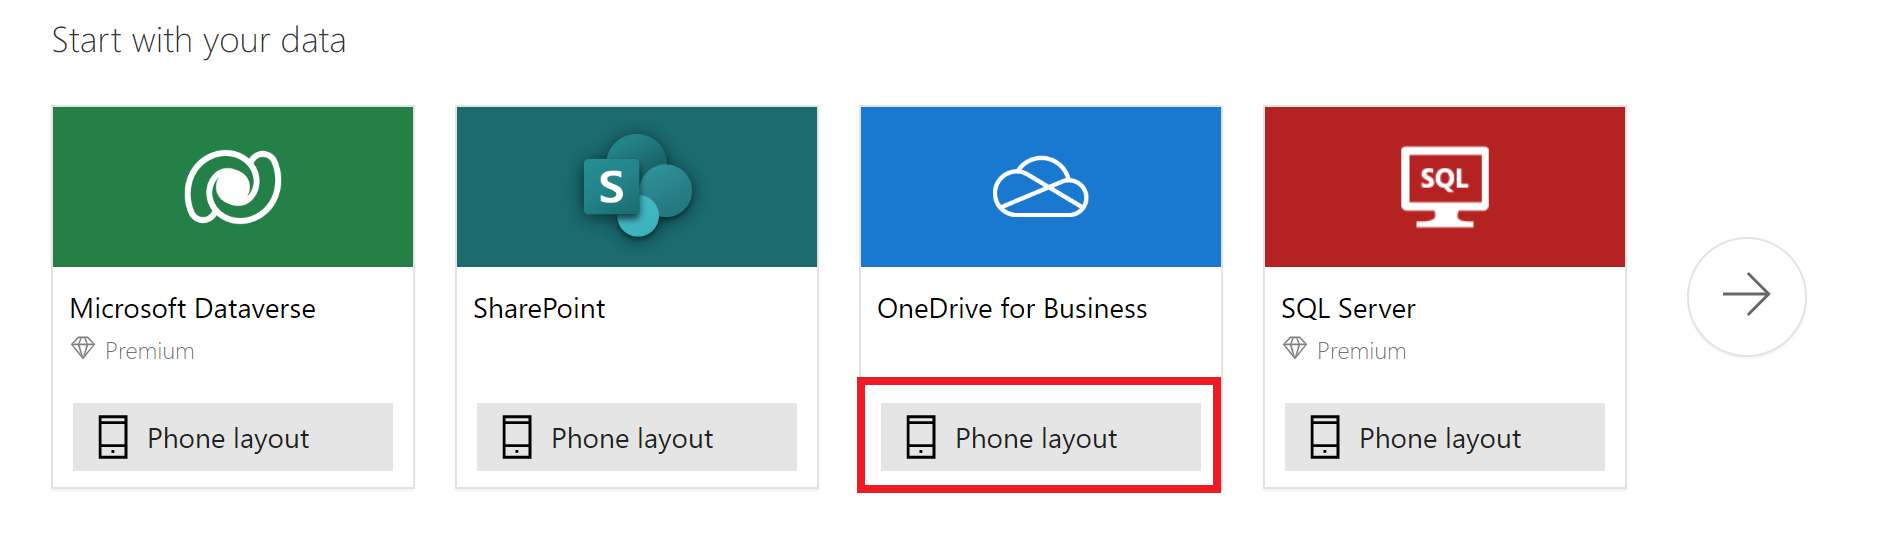 Capture de l’écran Démarrer avec vos données avec l’option Mode téléphone pour OneDrive Entreprise mise en évidence.